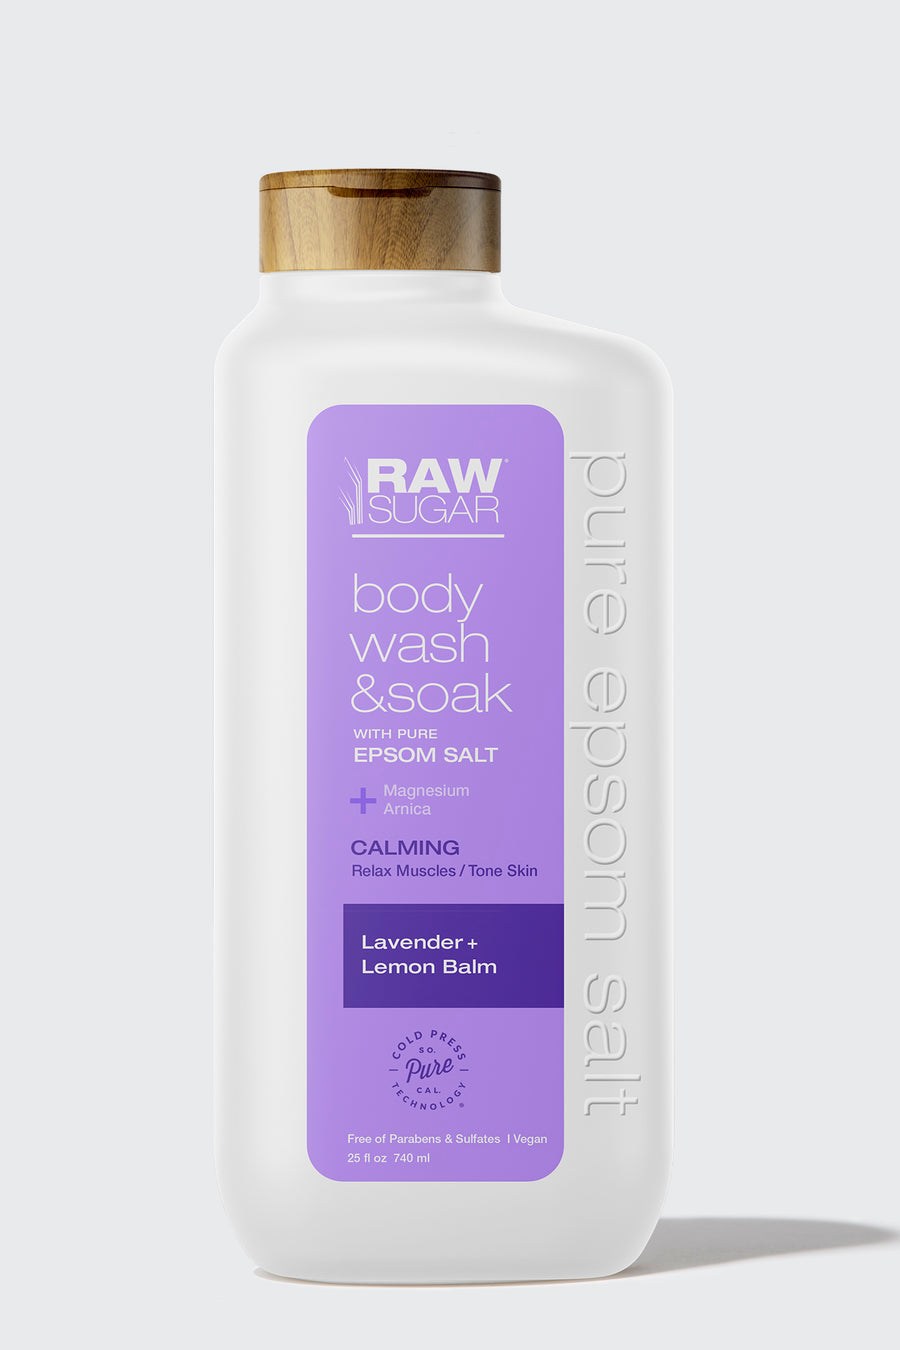 Raw Sugar Body Wash & Soak with Pure Epsom Salt, Lavender + Lemon Balm - 25 fl oz